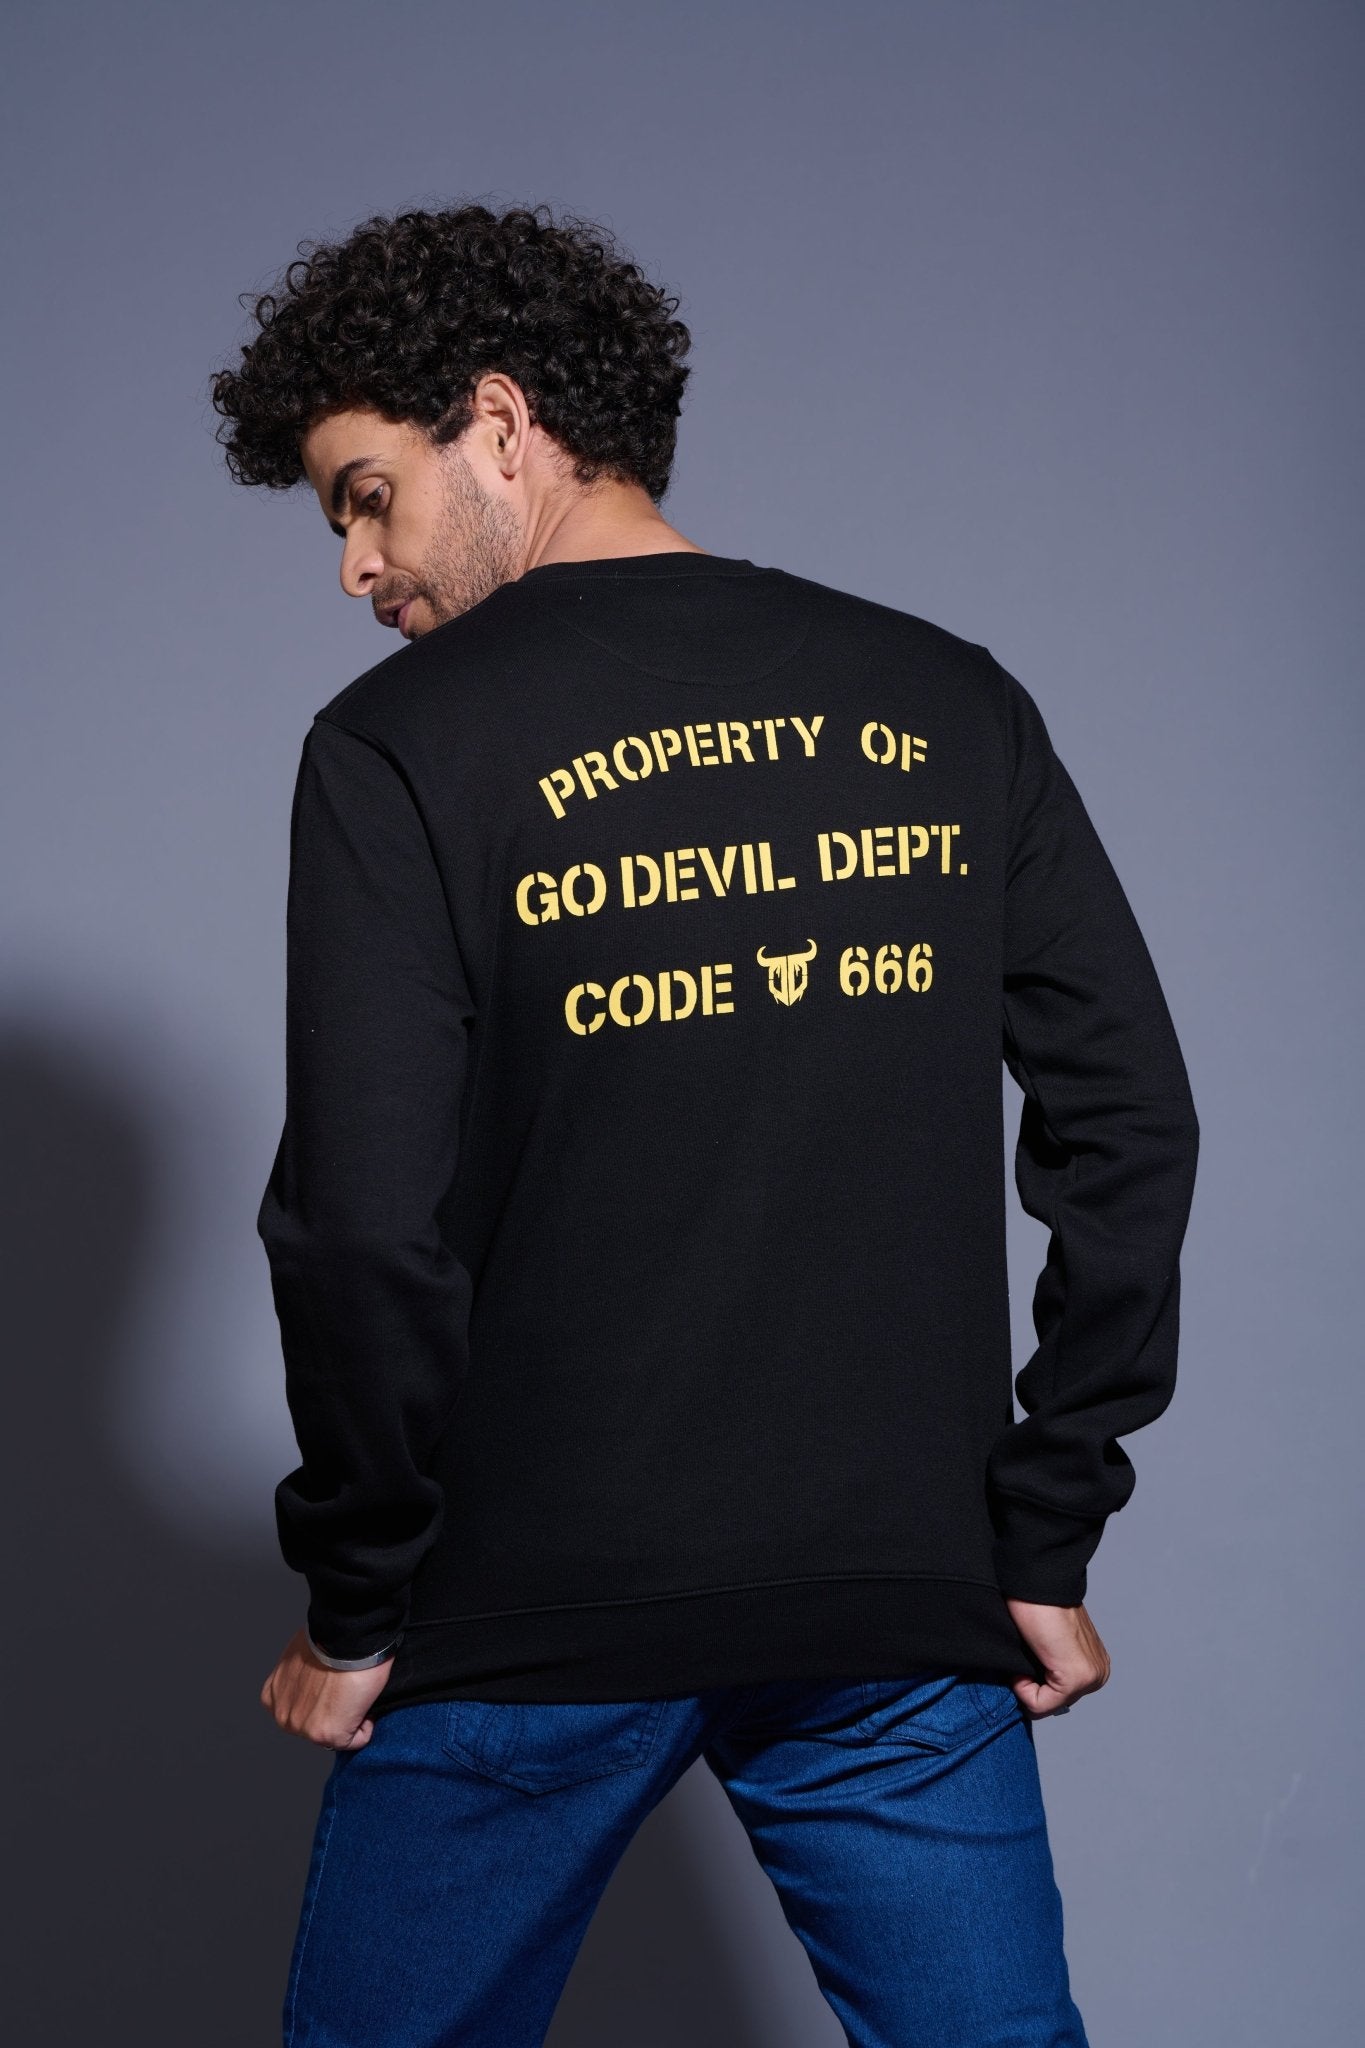 Property of GoDevil Printed Black Sweatshirt for Men - Go Devil